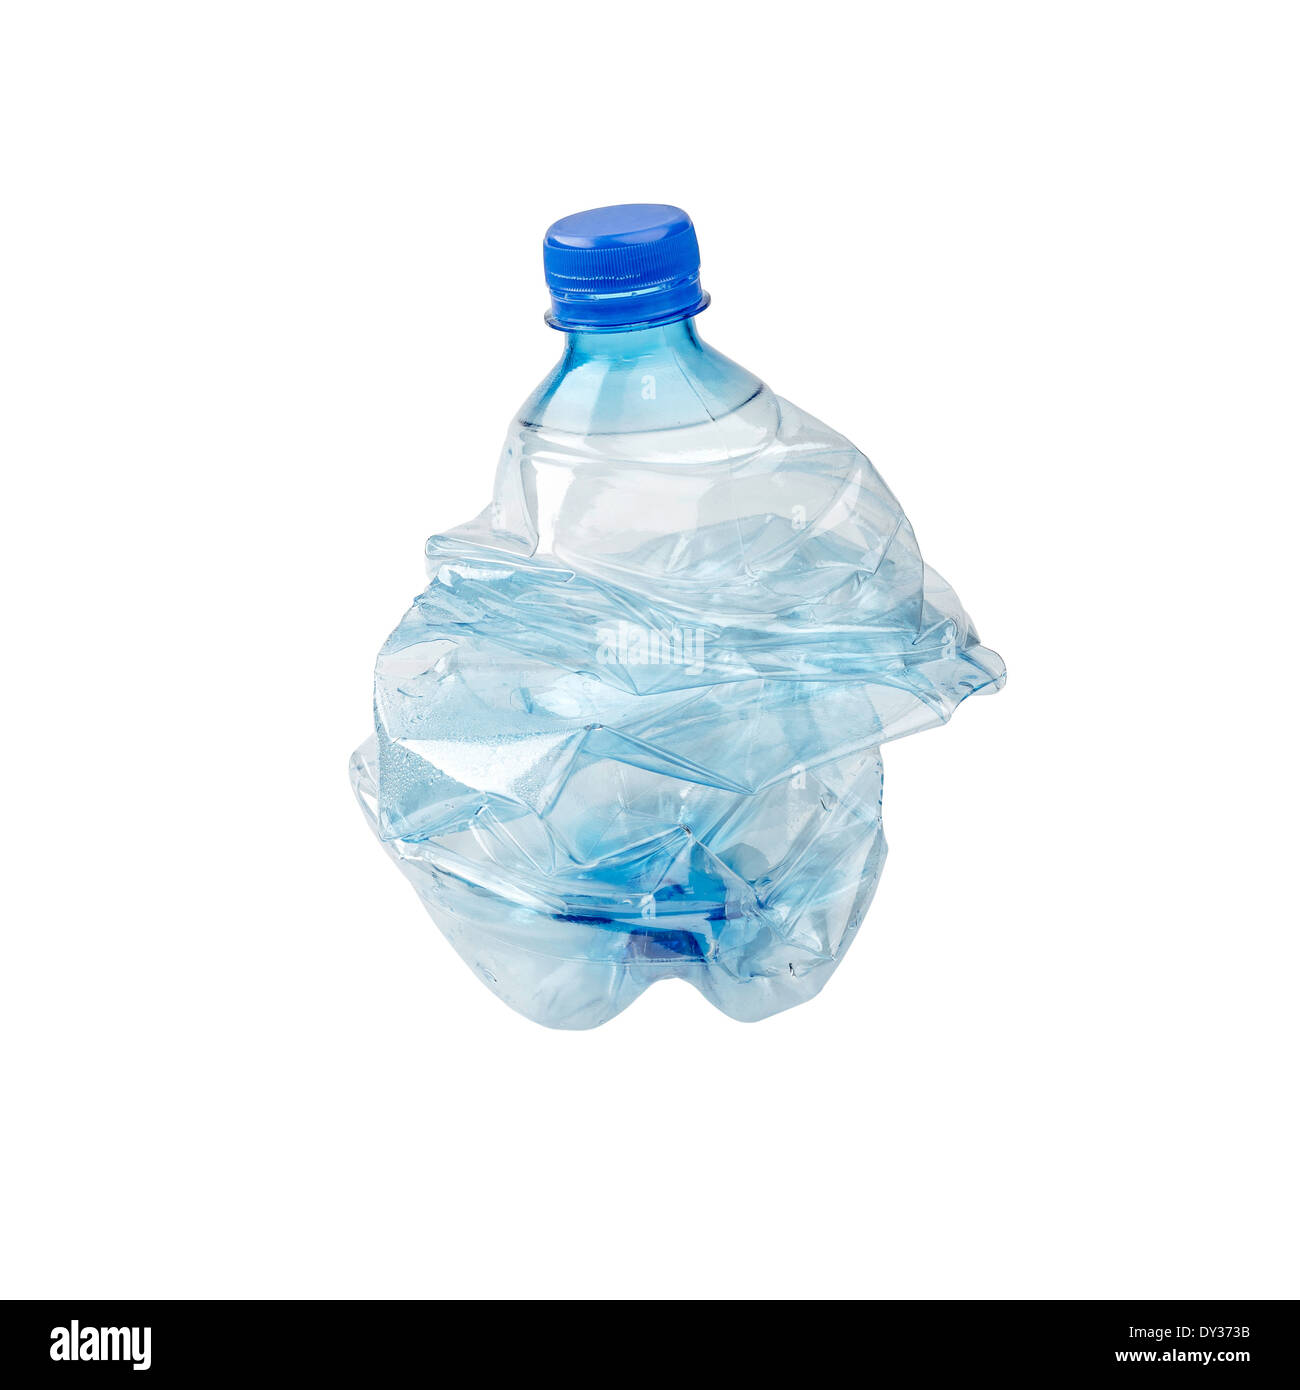 An empty smashed blue plastic bottle, isolated on white background Stock Photo